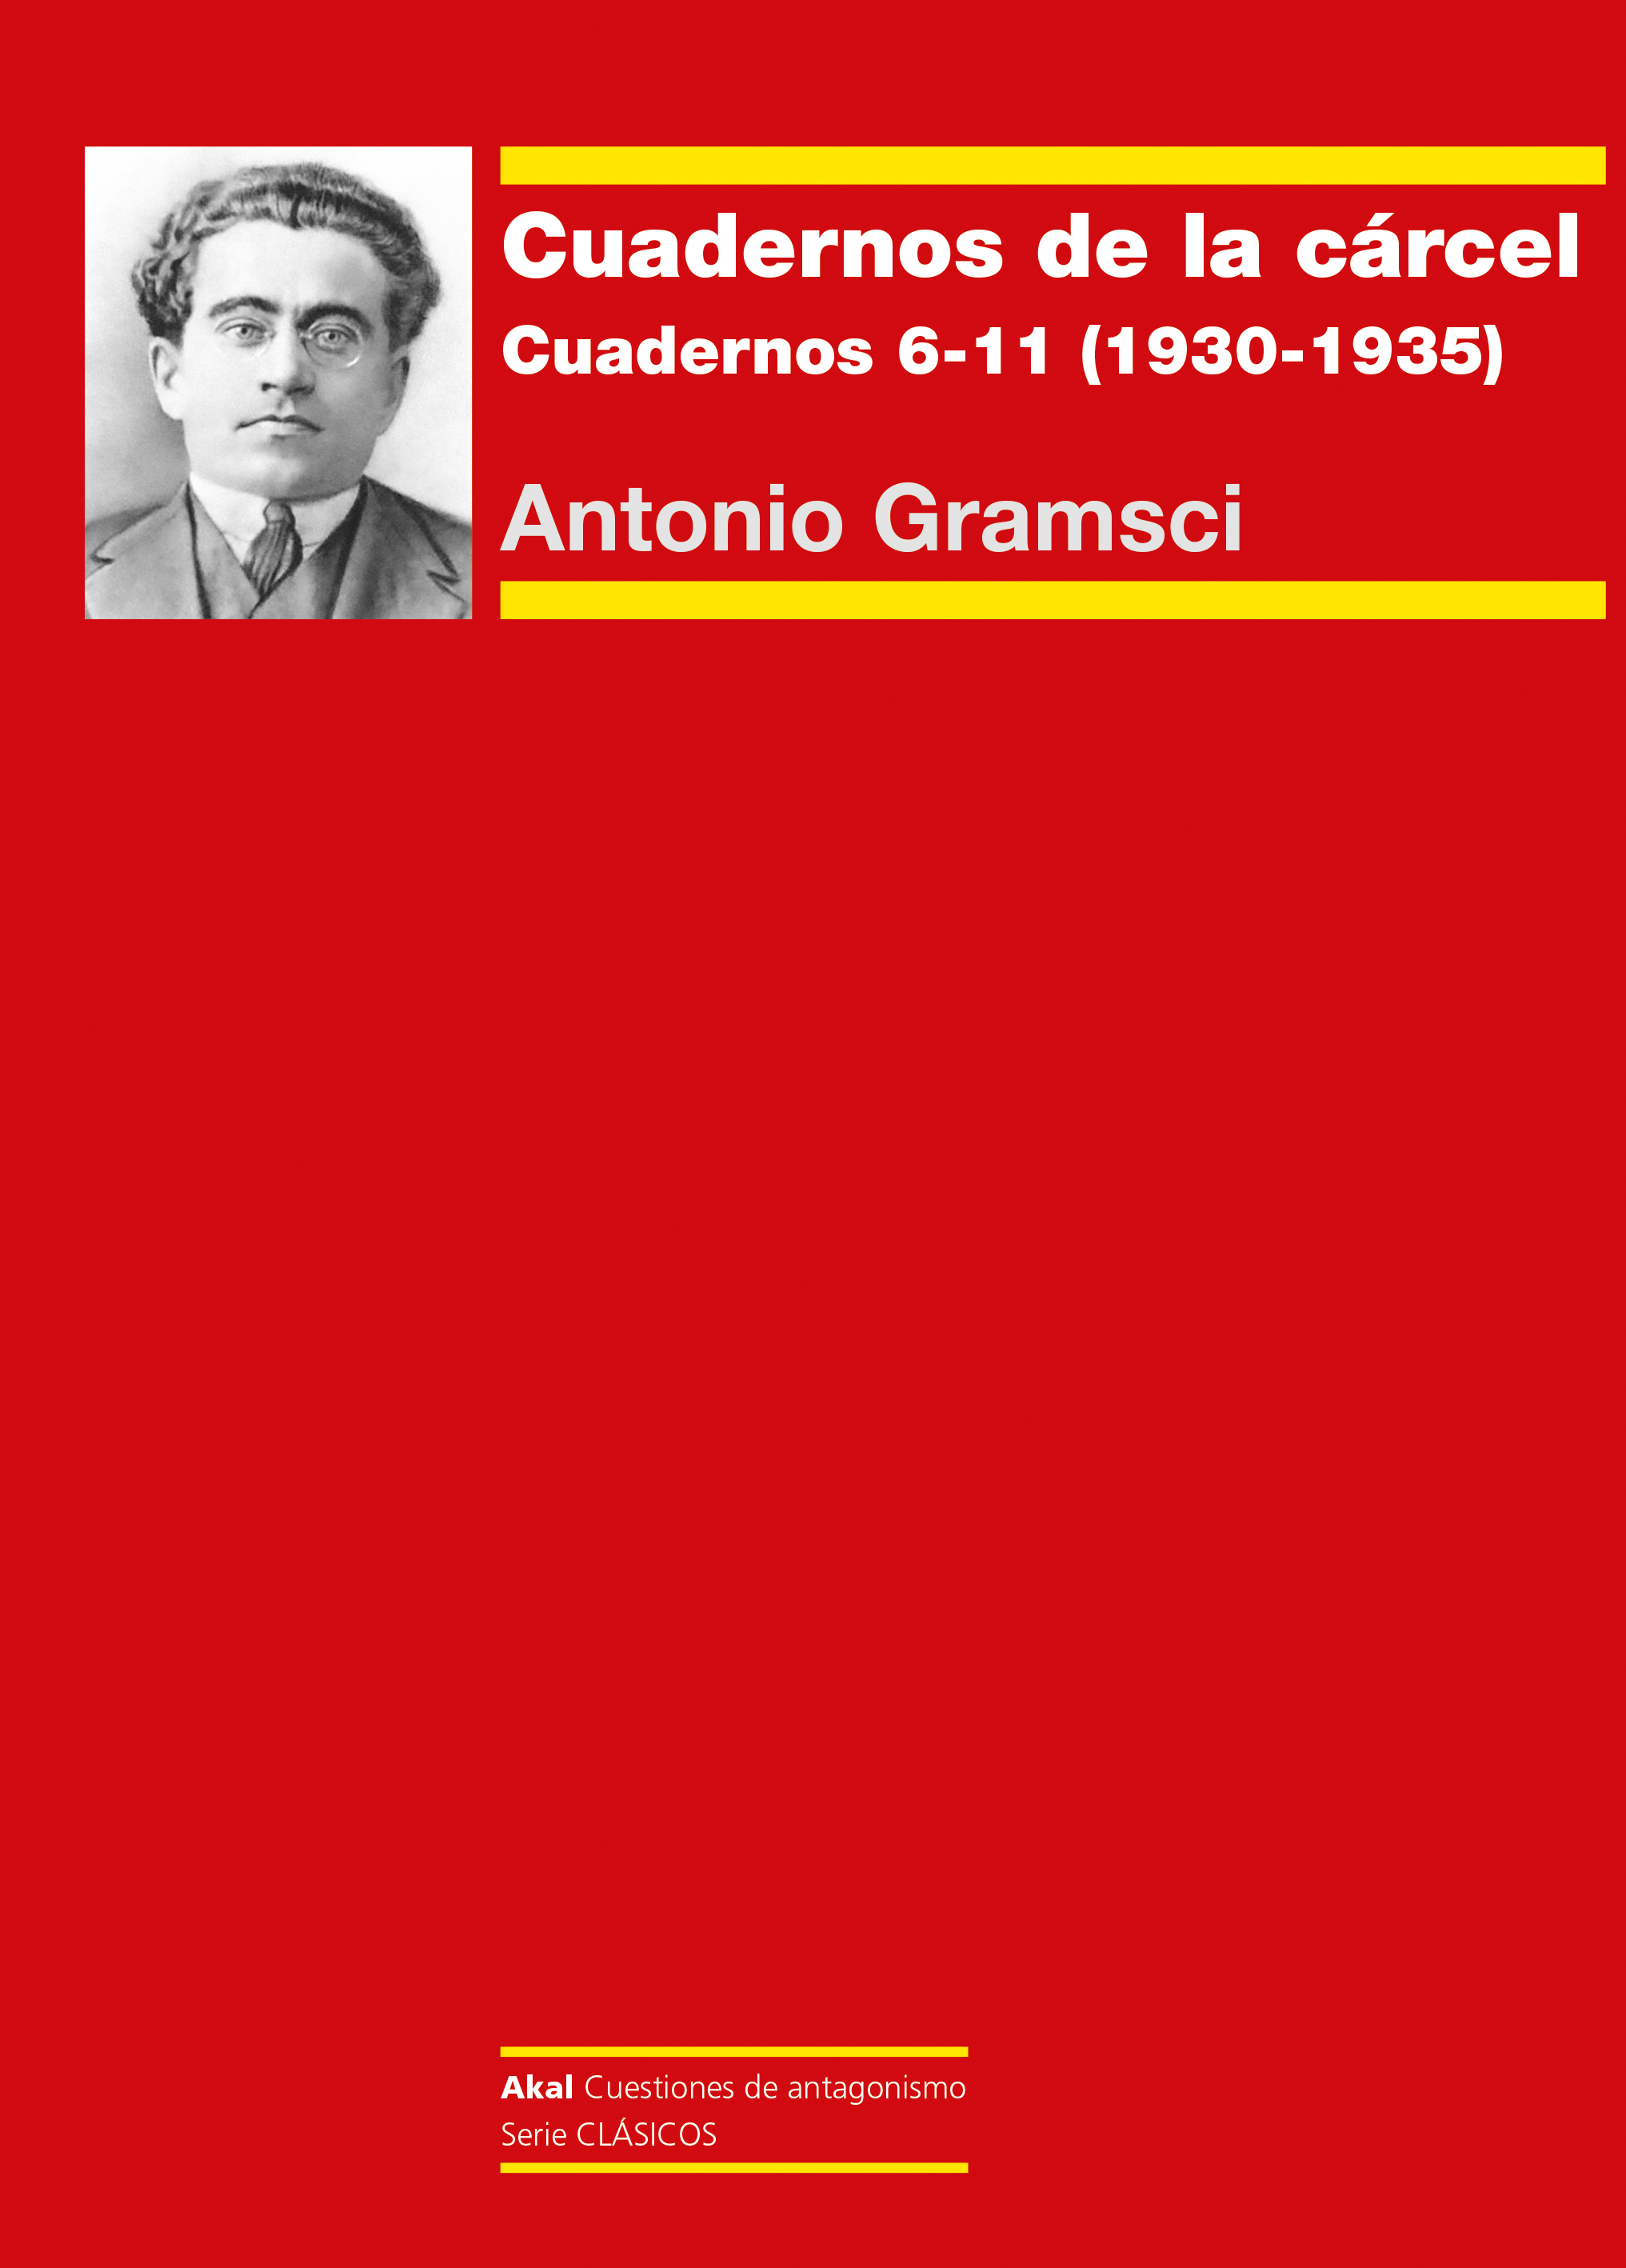 CUADERNOS DE LA CÁRCEL (II) - Antonio Gramsci